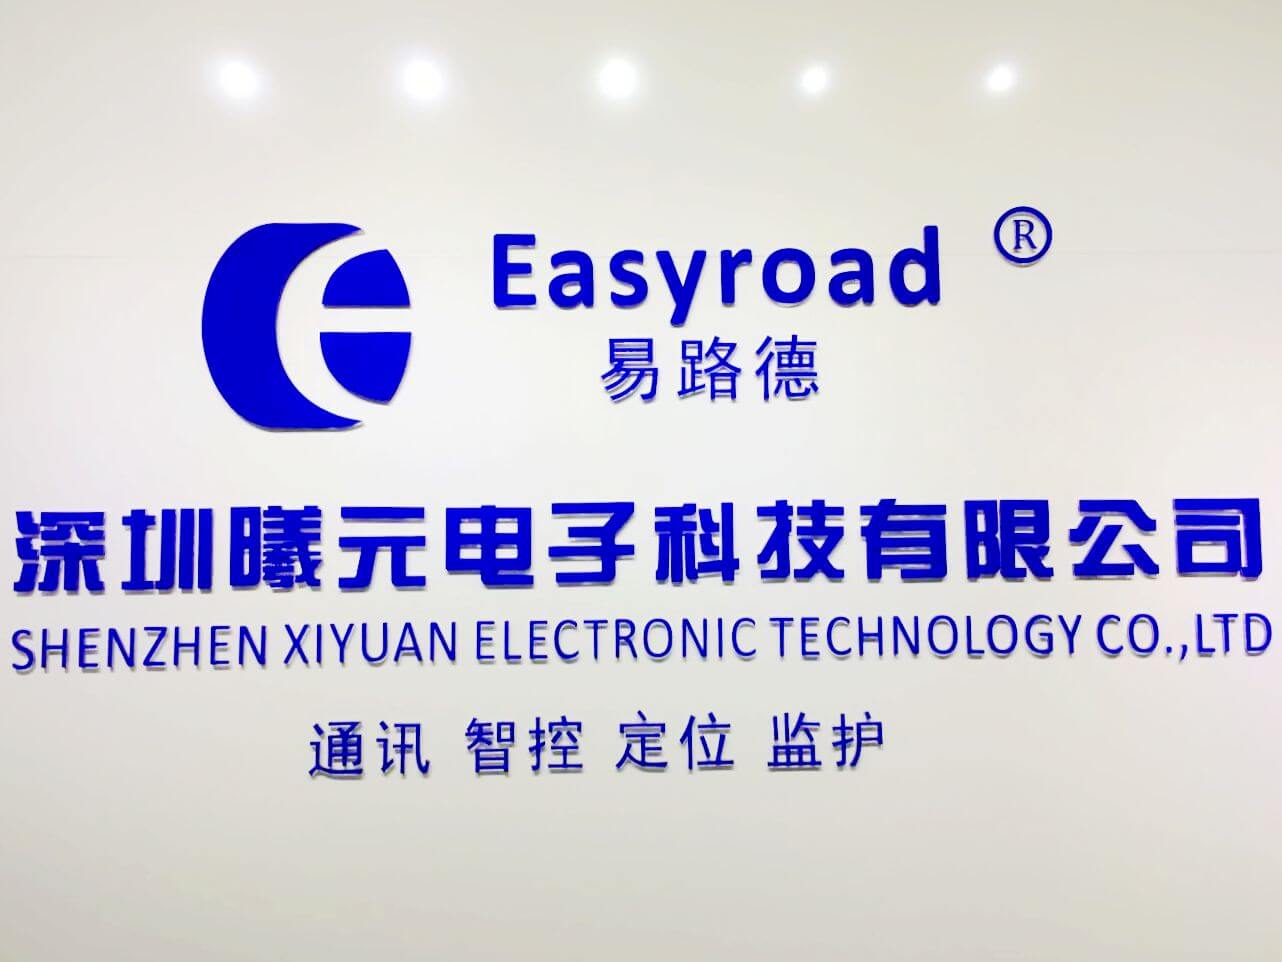 Easyroad Technology